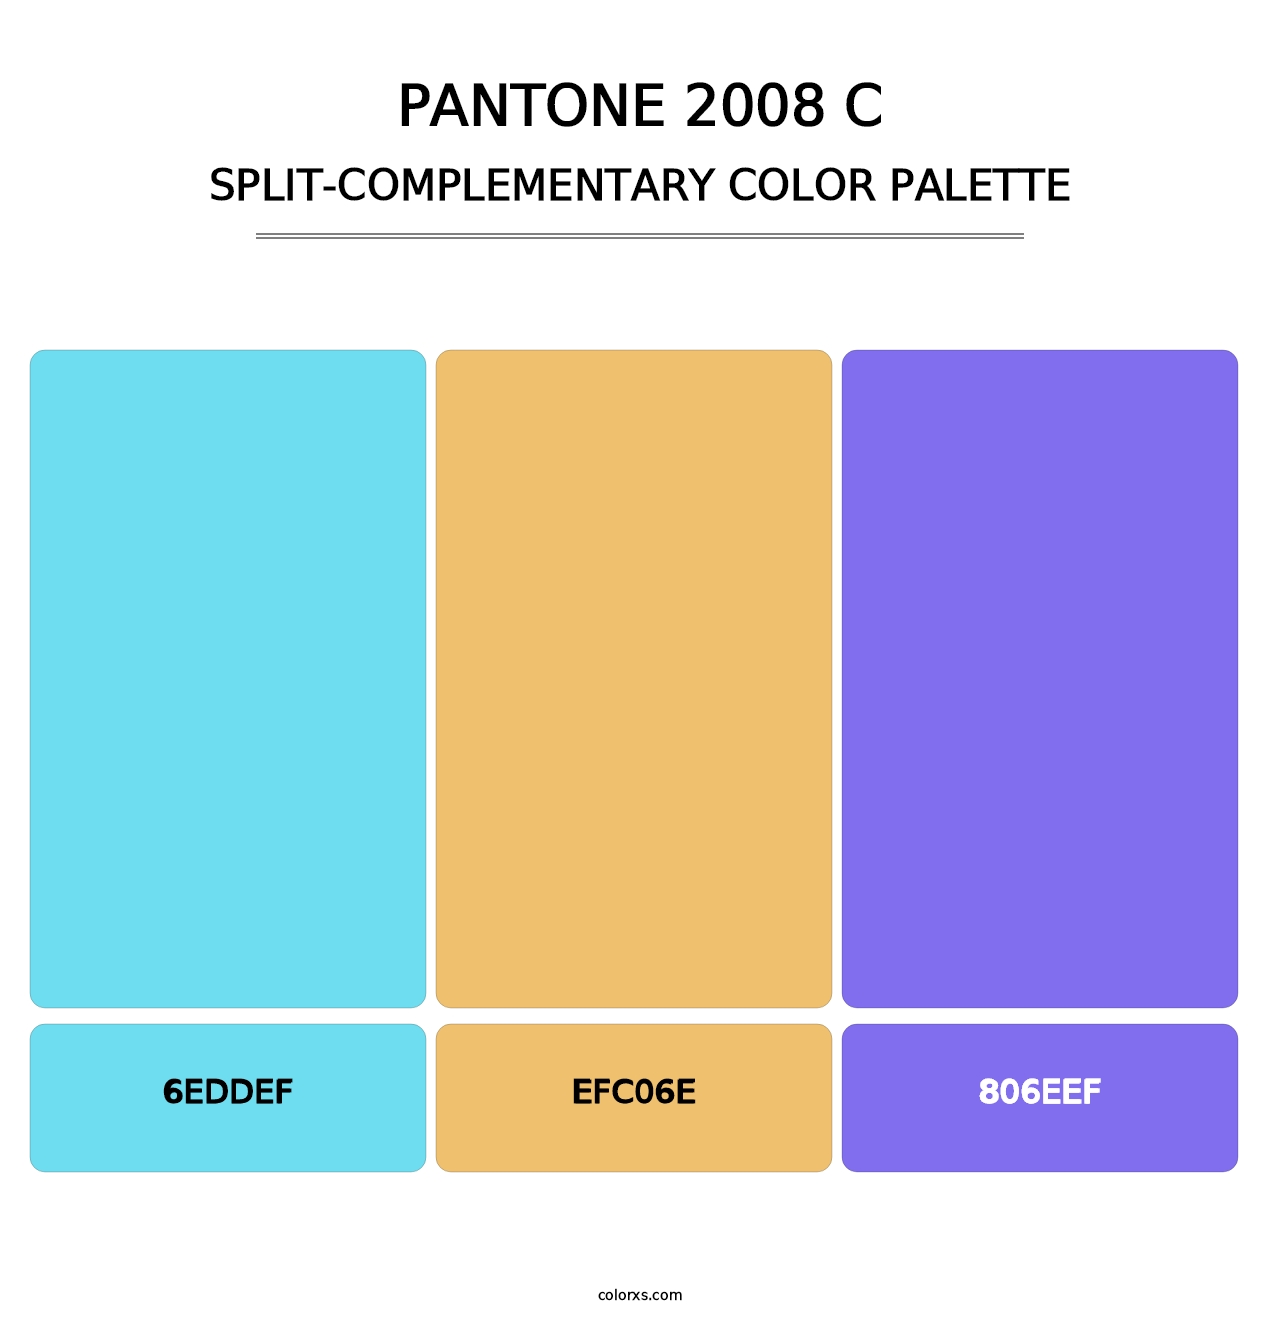 PANTONE 2008 C - Split-Complementary Color Palette